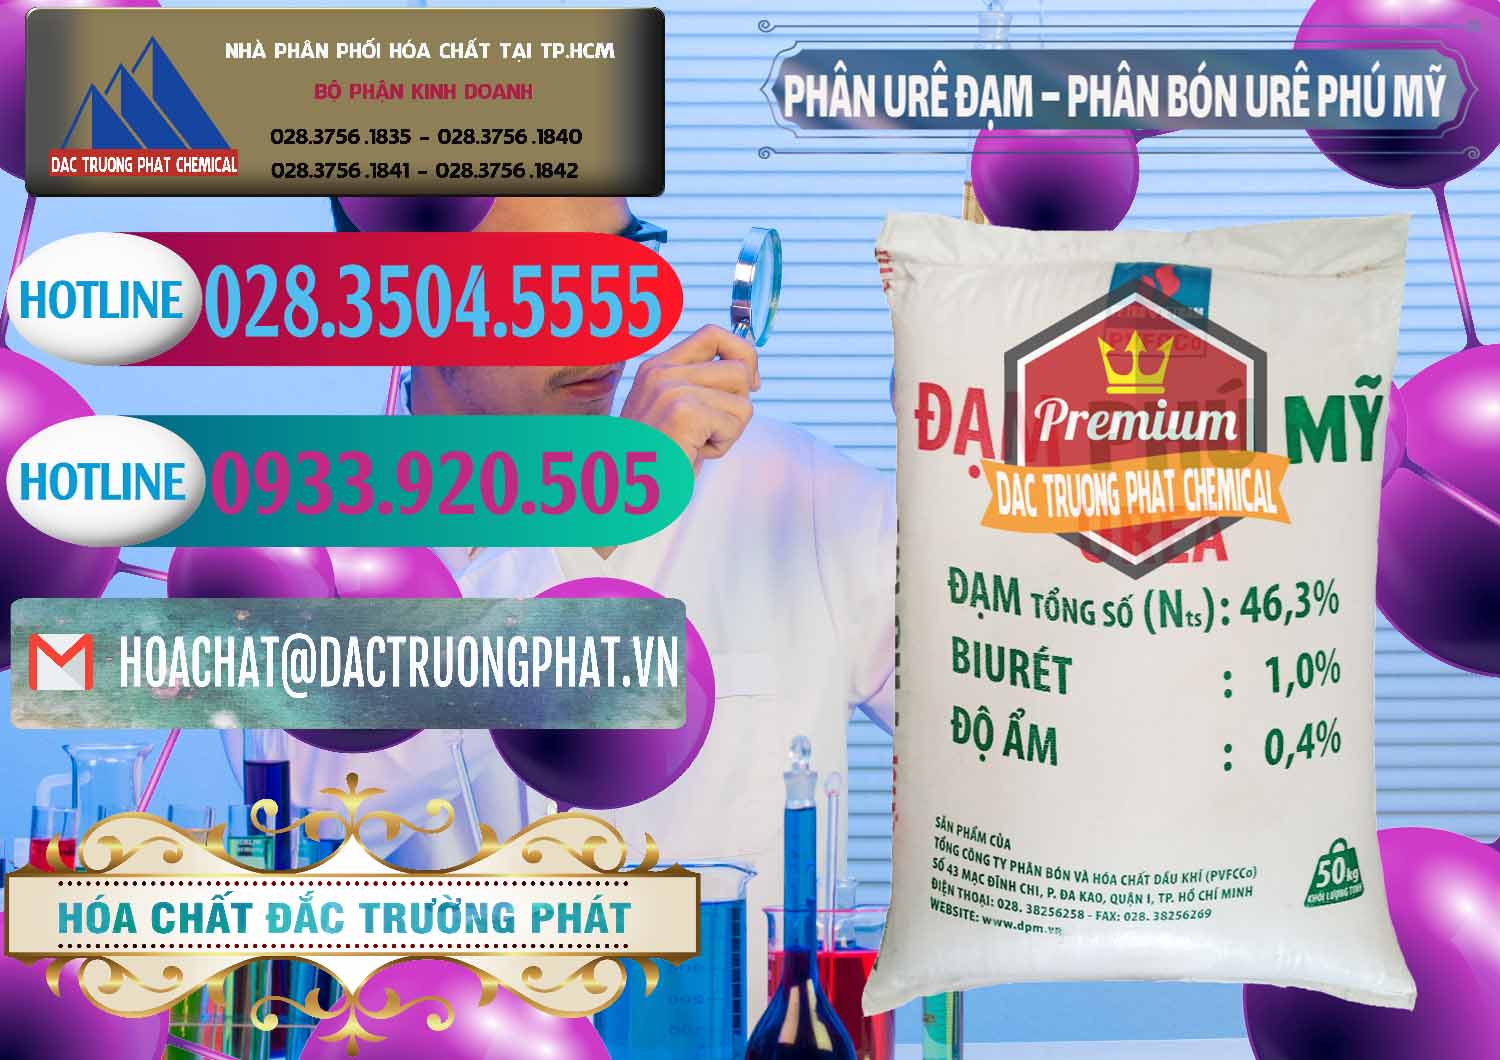 Cty bán và cung ứng Phân Urê Đạm – Phân Bón Urê Phú Mỹ Việt Nam - 0193 - Nơi bán & cung cấp hóa chất tại TP.HCM - truongphat.vn